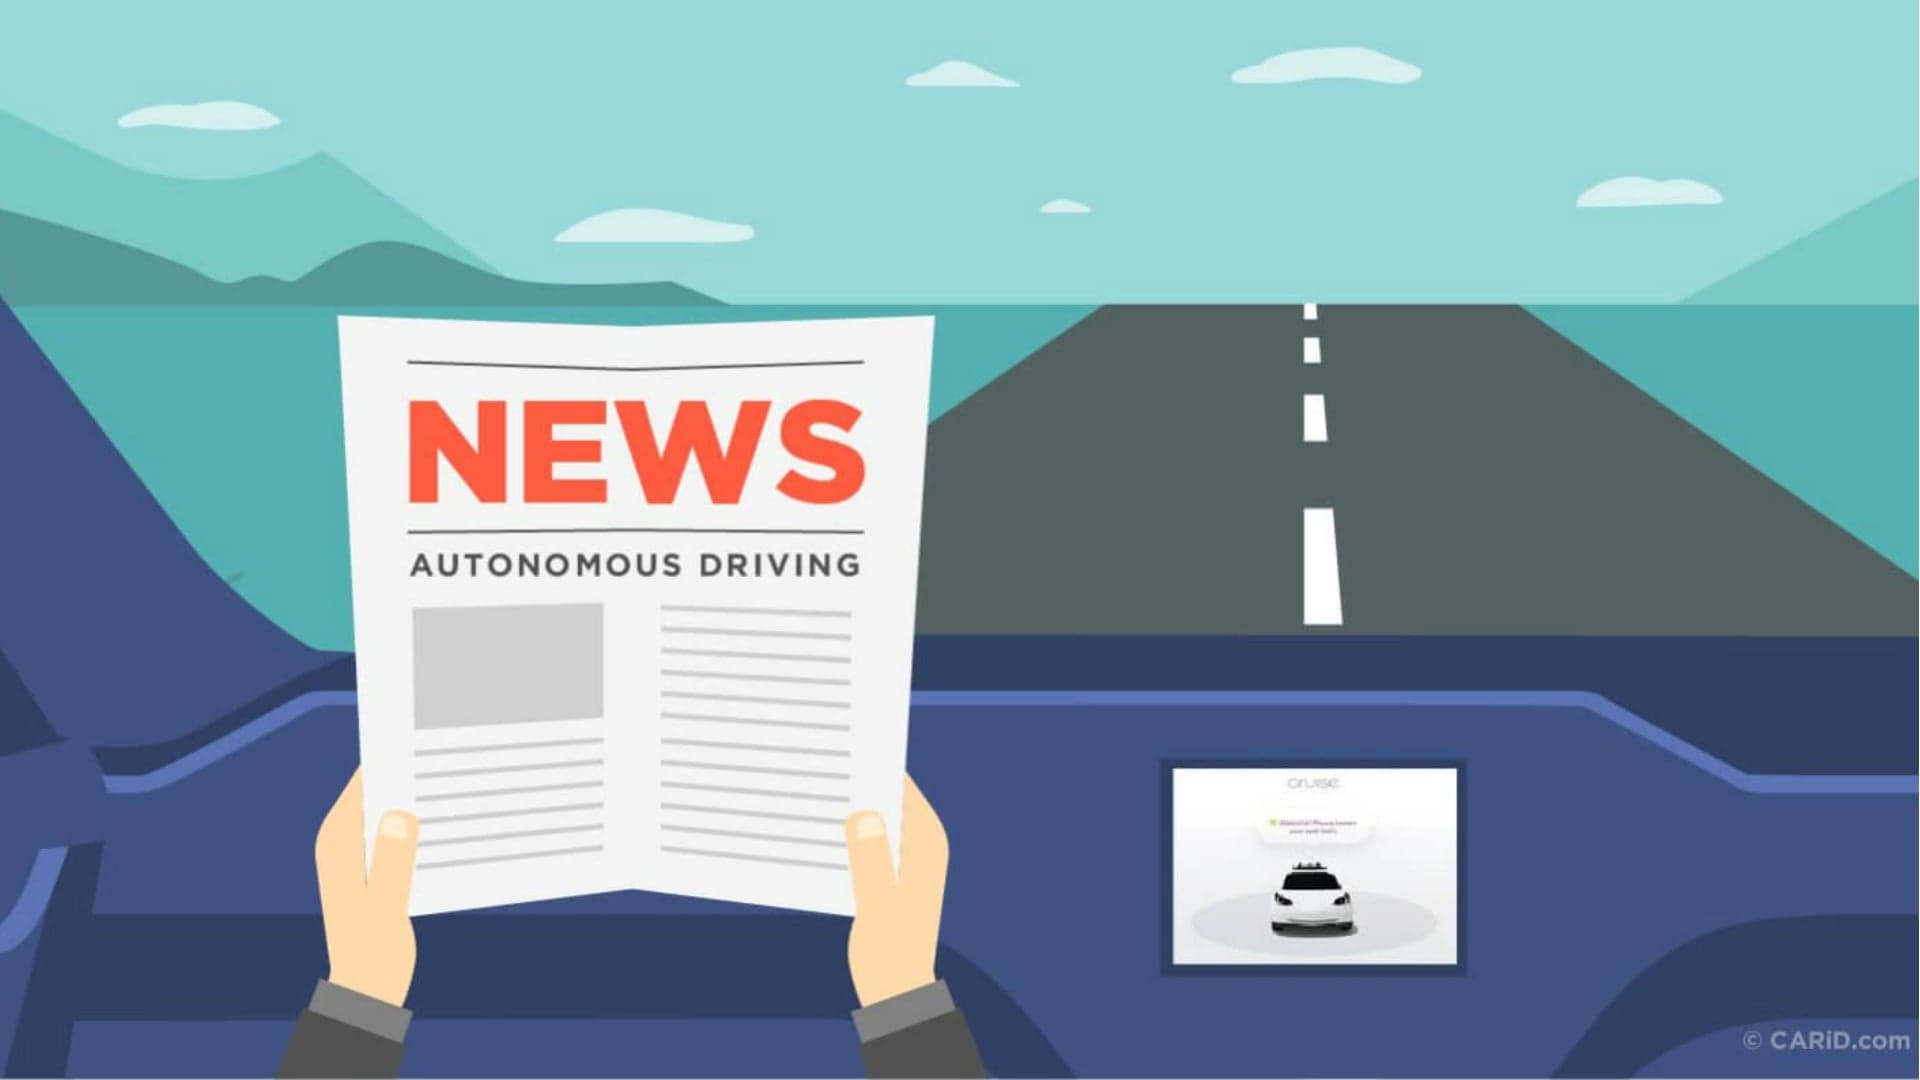 Survey Finds 75 Percent of Americans Cautious About Autonomous Vehicles